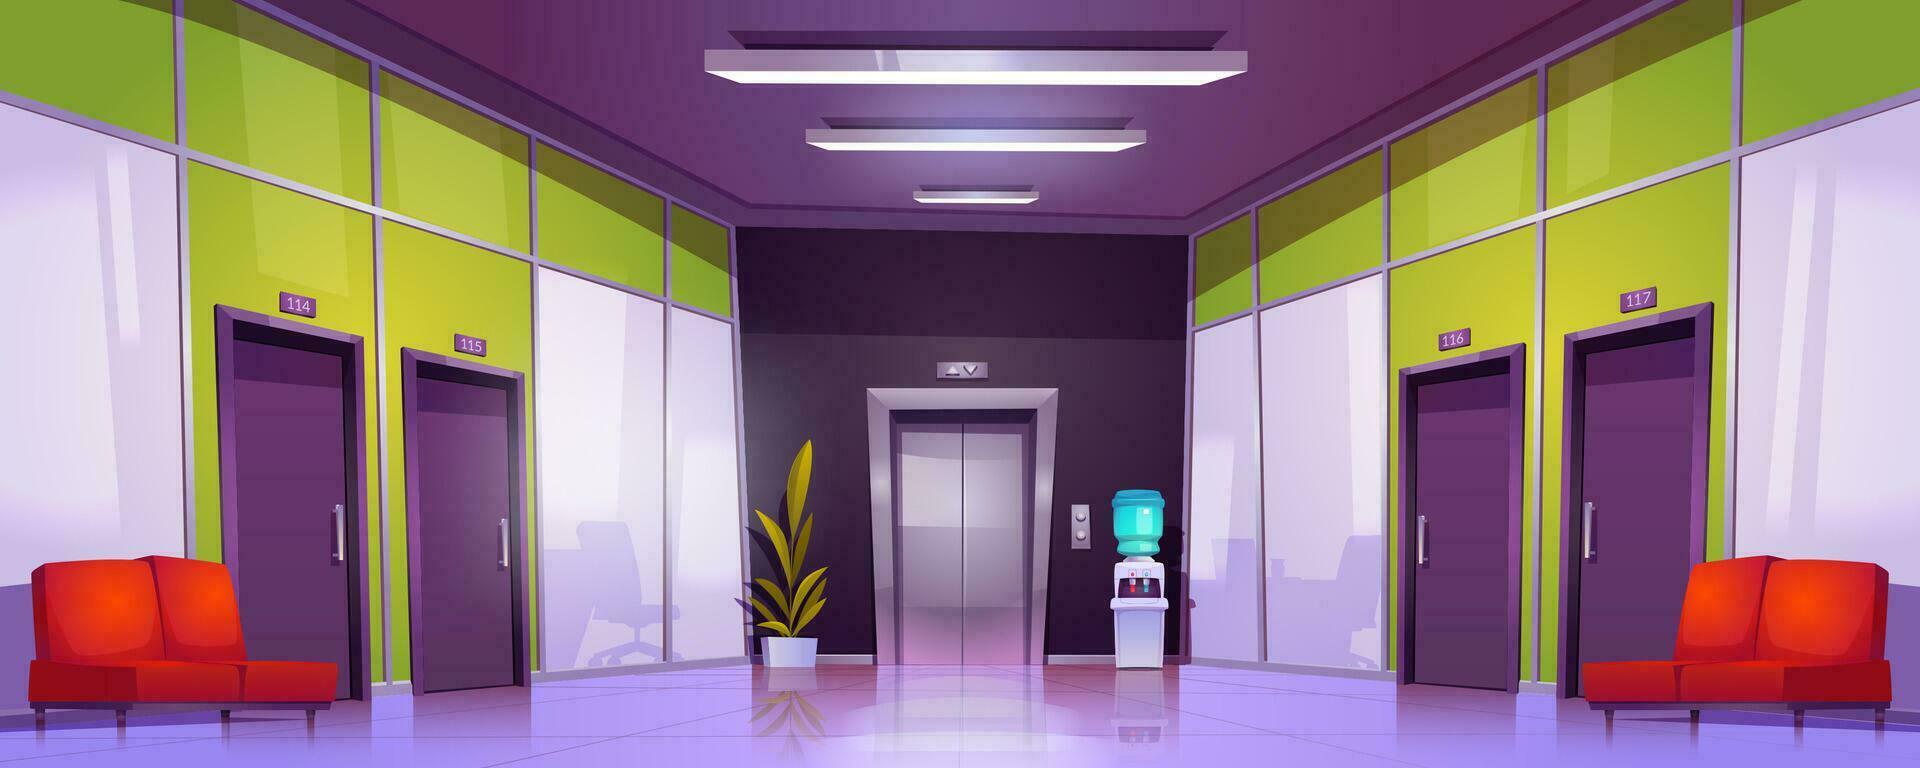 Büro Gang Innere mit Türen und Aufzug vektor